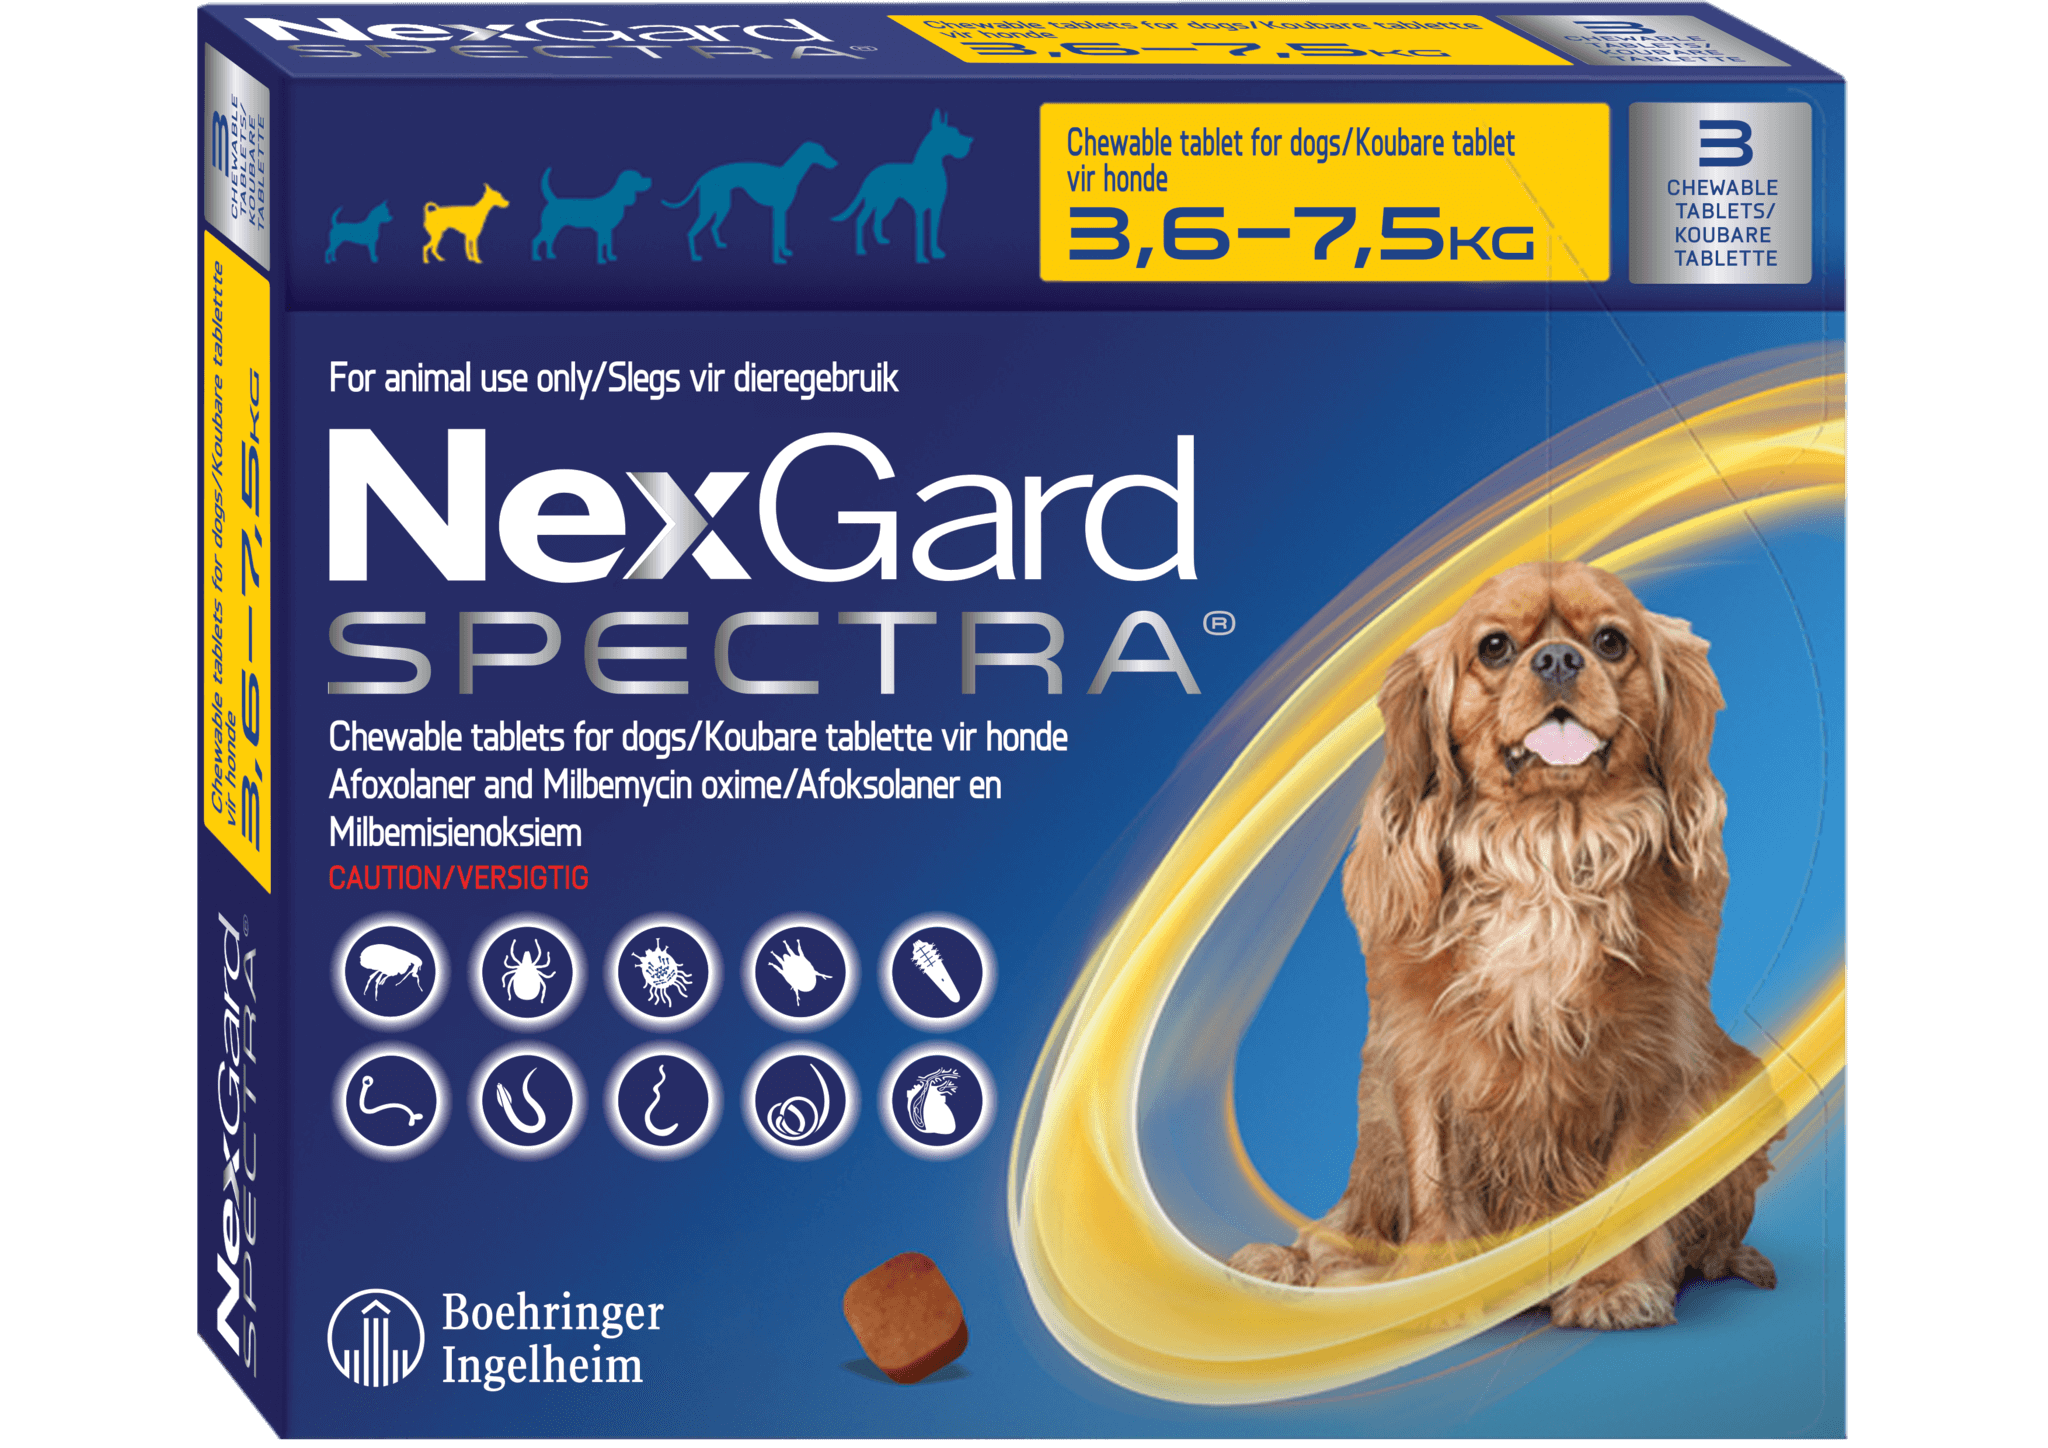 Фронтлайн нексгард 2 4 кг. НЕКСГАРД спектра для собак 2-3.5 кг. НЕКСГАРД спектра для собак 3,5-7. НЕКСГАРД для собак 7.5. NEXGARD Spectra для собак.